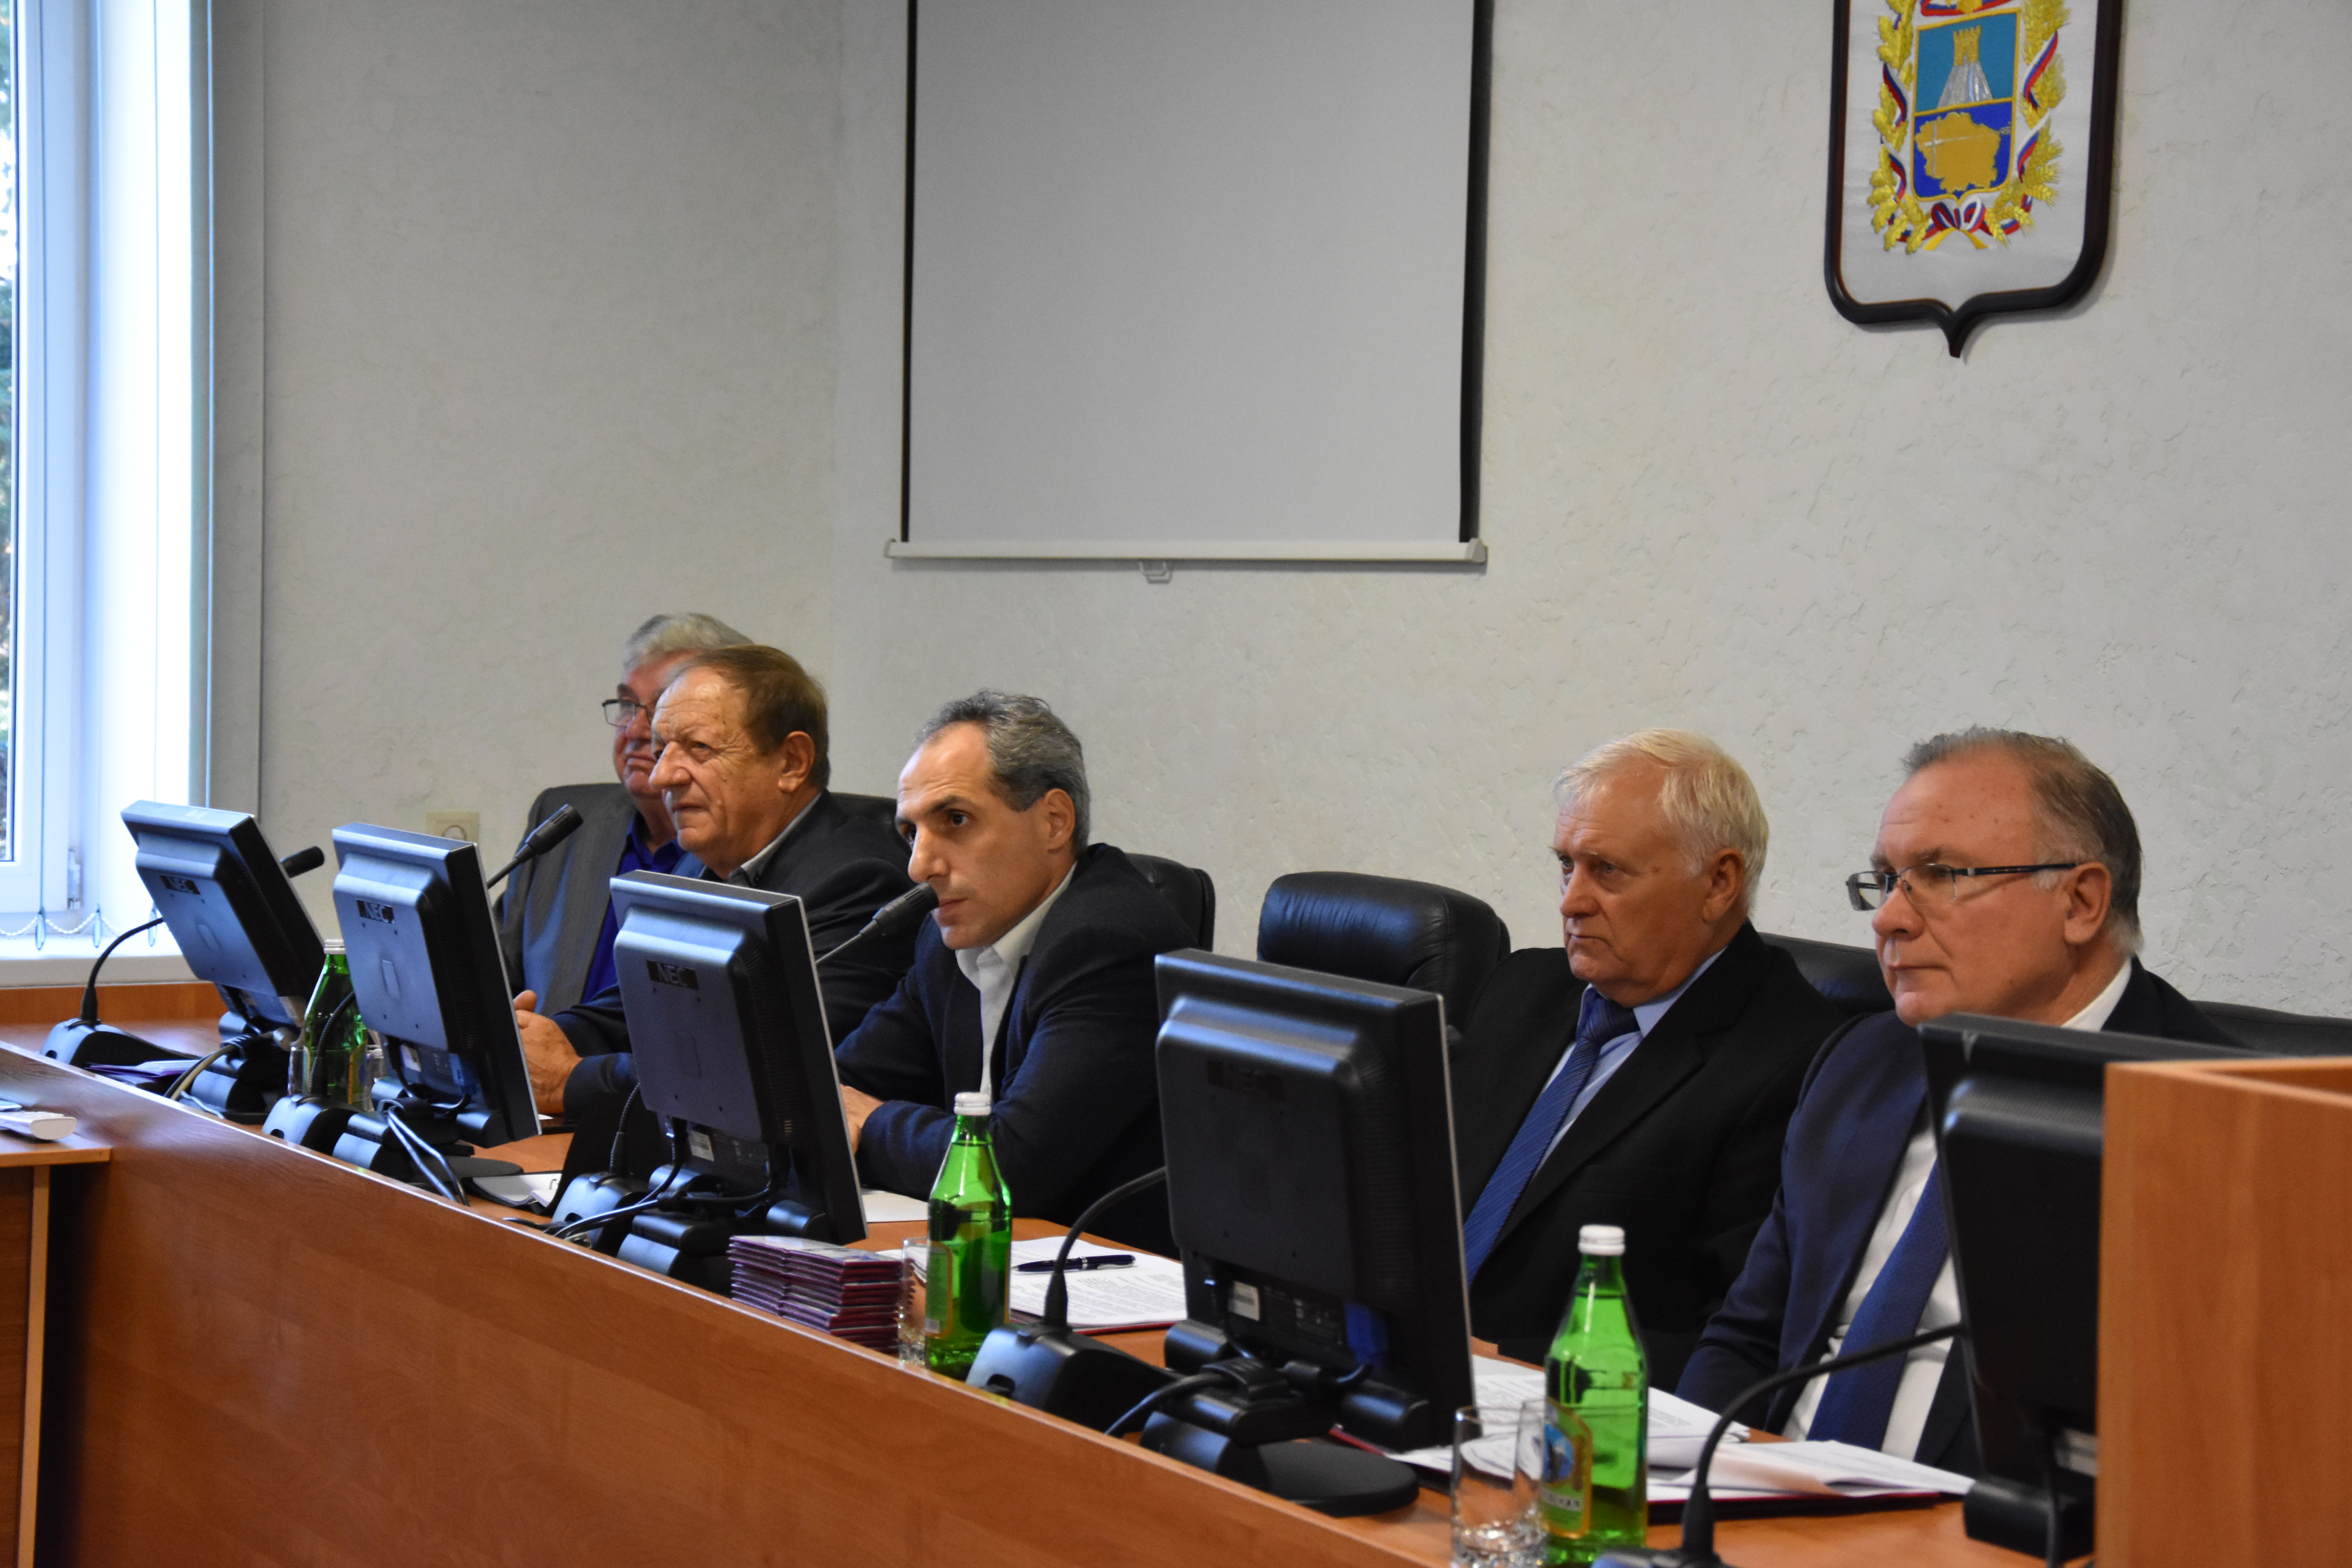 11 октября 2019 года под председательством Кулинцева В.В. состоялось третье заседание Общественного Совета Шпаковского муниципального района Ставропольского края третьего созыва